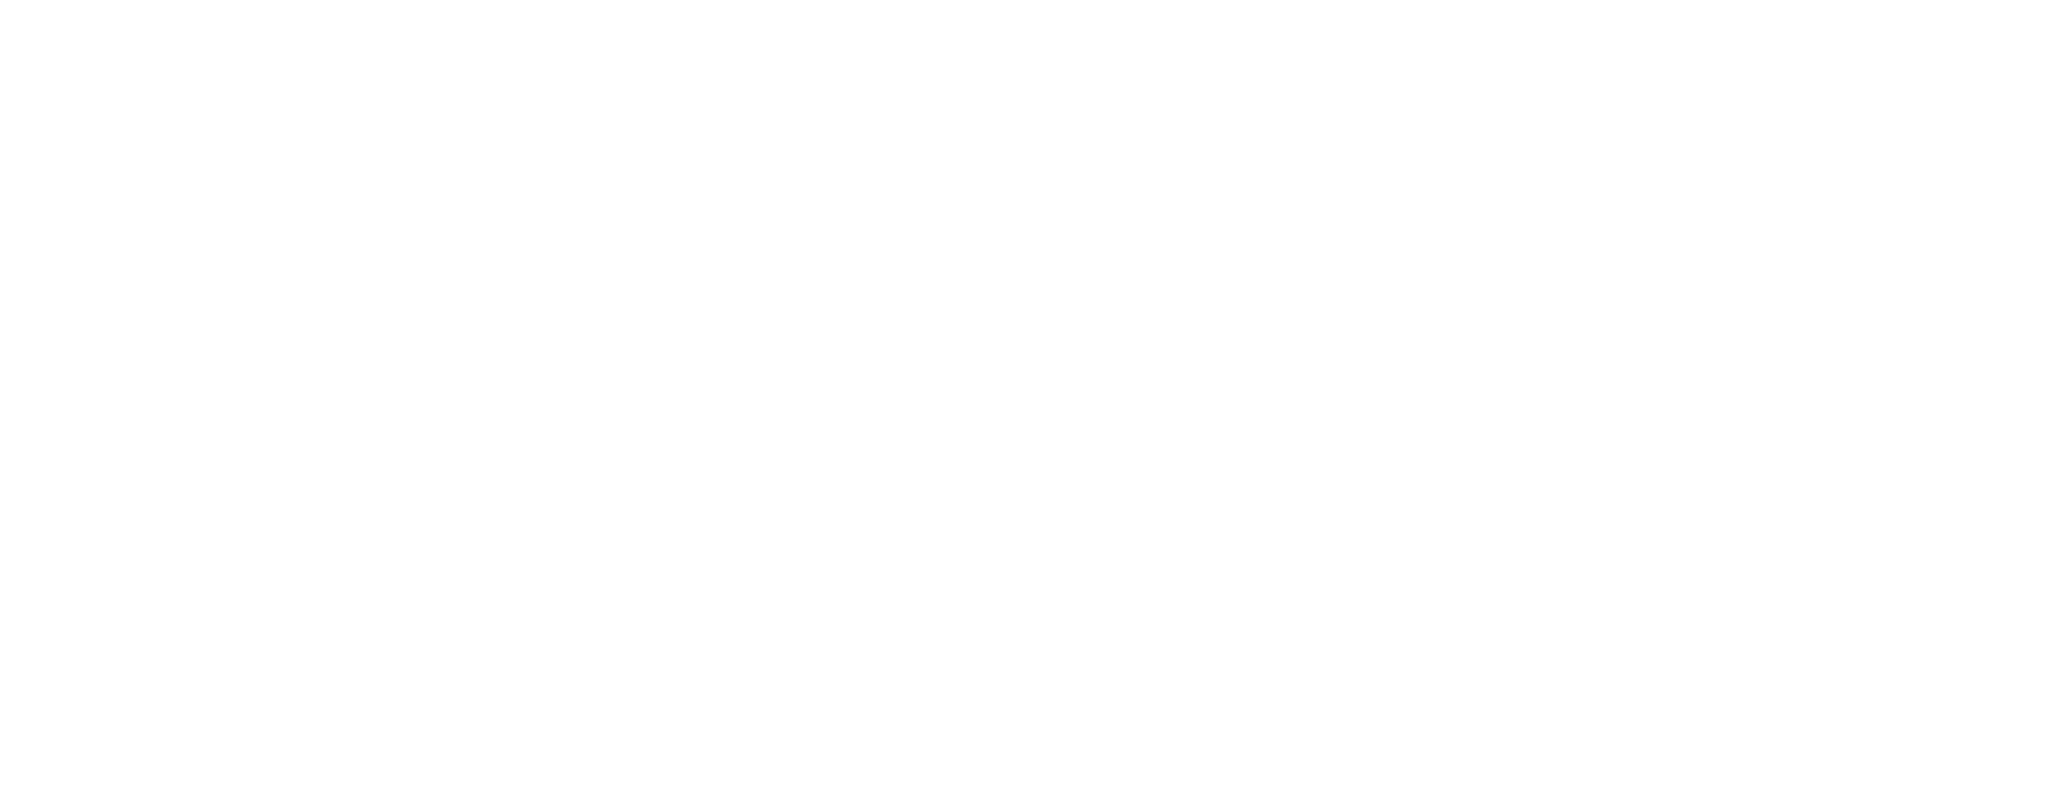 Logo-spanish-training_blanco